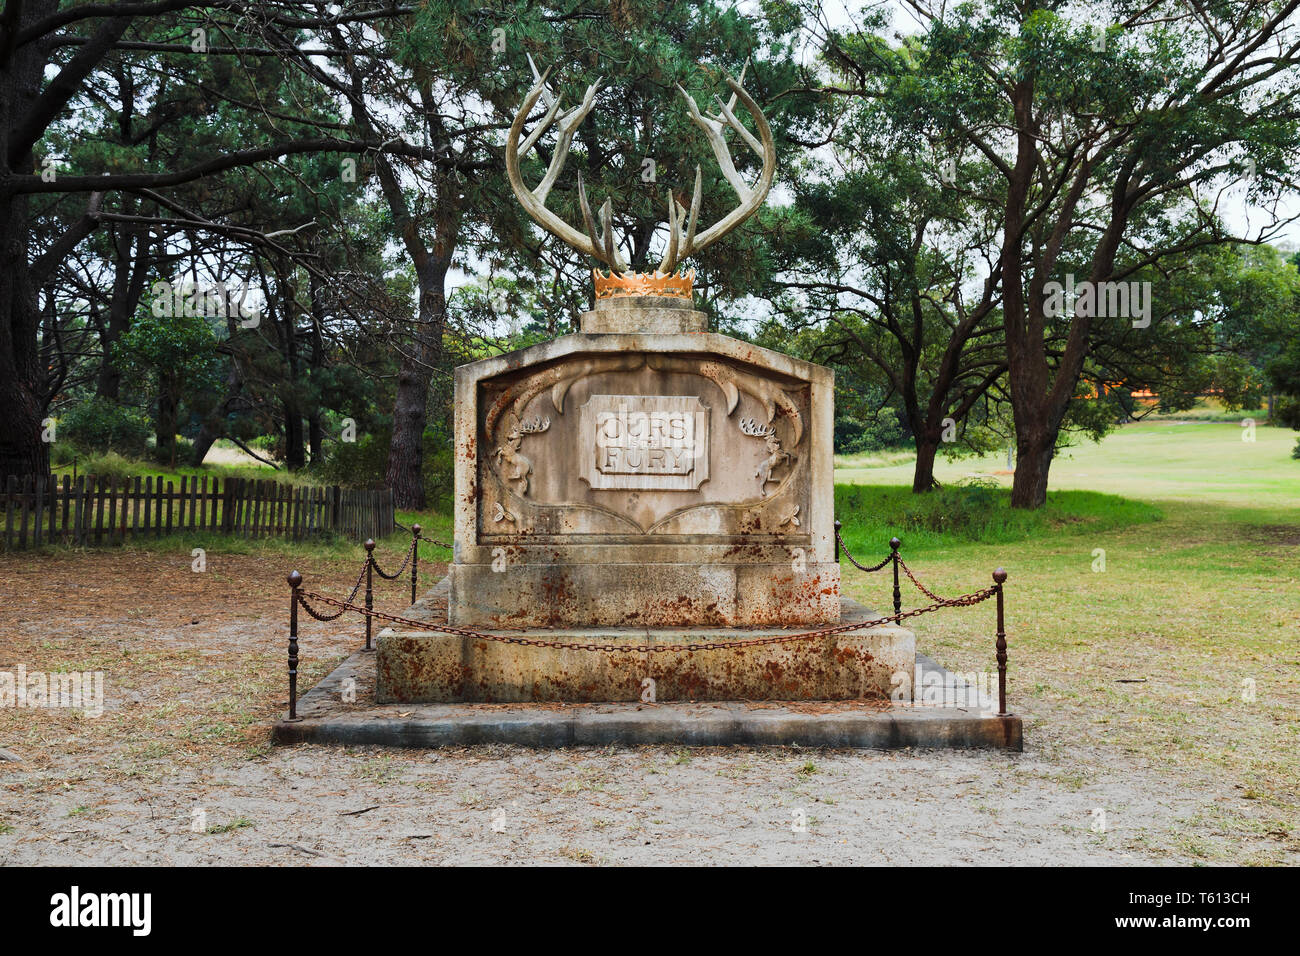 Sydney, Australien - 14 April 2019: Friedhöfe von Zeichen aus der populären TV-Show Spiel des Thones. Öffentliche unticketed Ereignis in Sydney Centennial Park wit Stockfoto